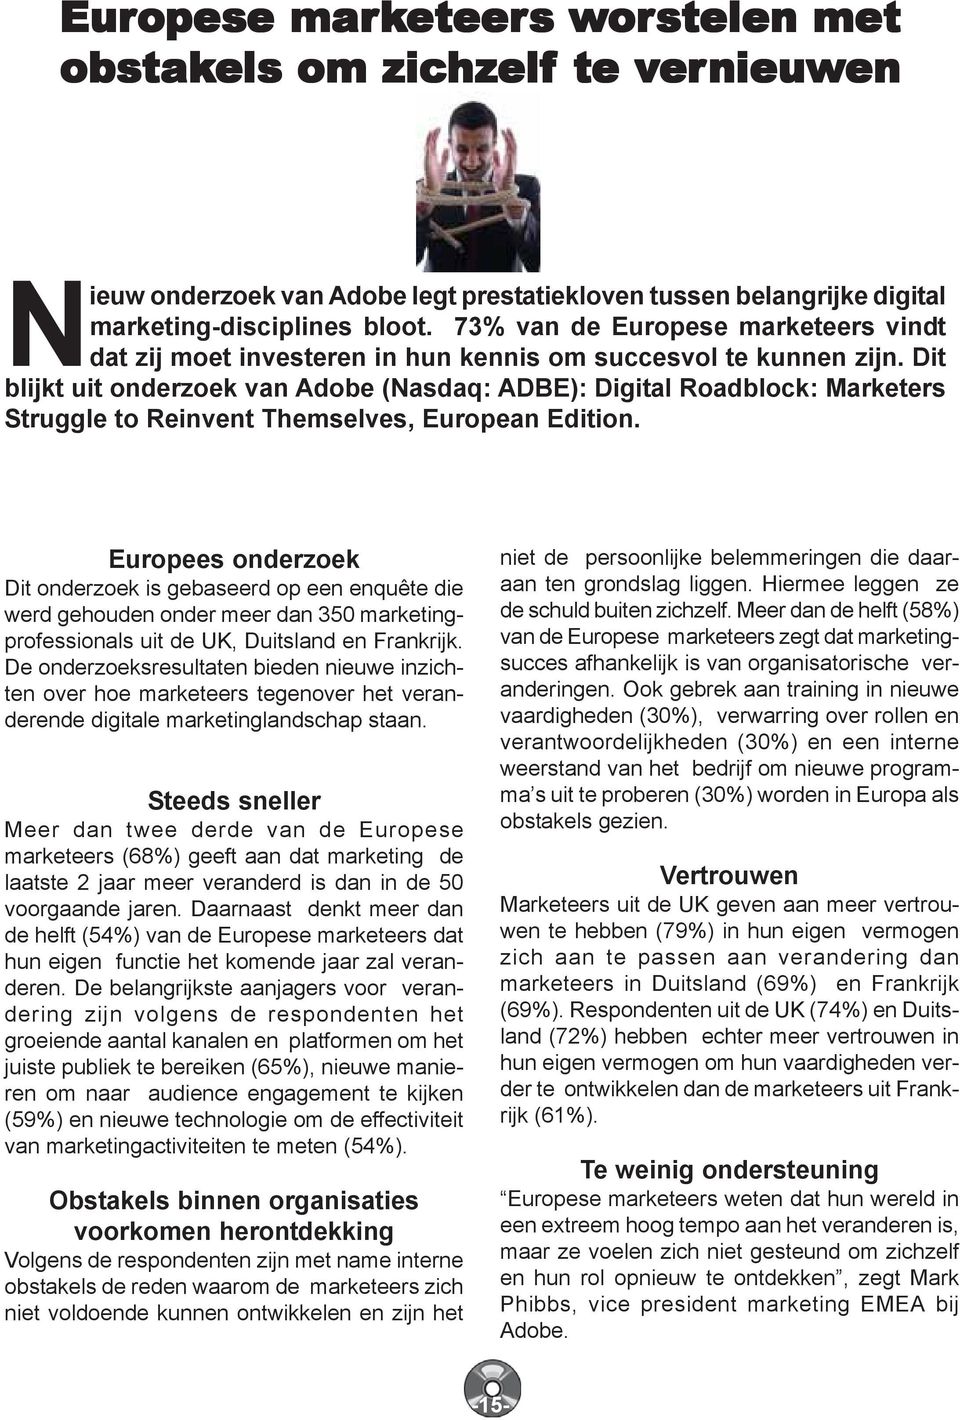 Dit blijkt uit onderzoek van Adobe (Nasdaq: ADBE): Digital Roadblock: Marketers Struggle to Reinvent Themselves, European Edition.